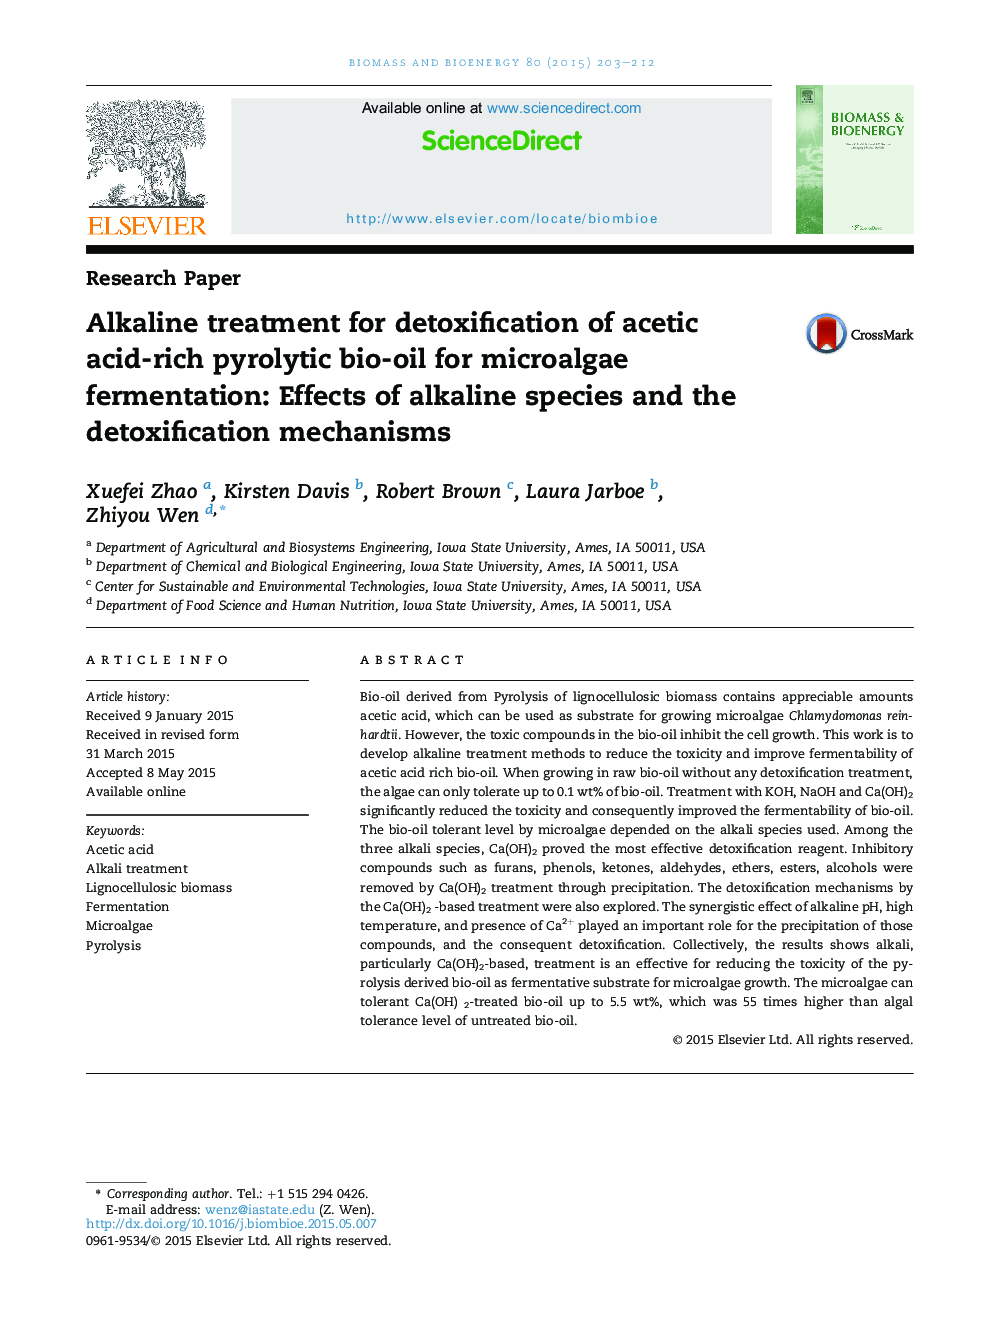 درمان قلیایی برای سم زدایی از روغن زیتون پیرولیتیک غنی از اسید استیک برای تخمیر مایکروویو: اثرات گونه های قلیایی و مکانیسم های سم زدایی 